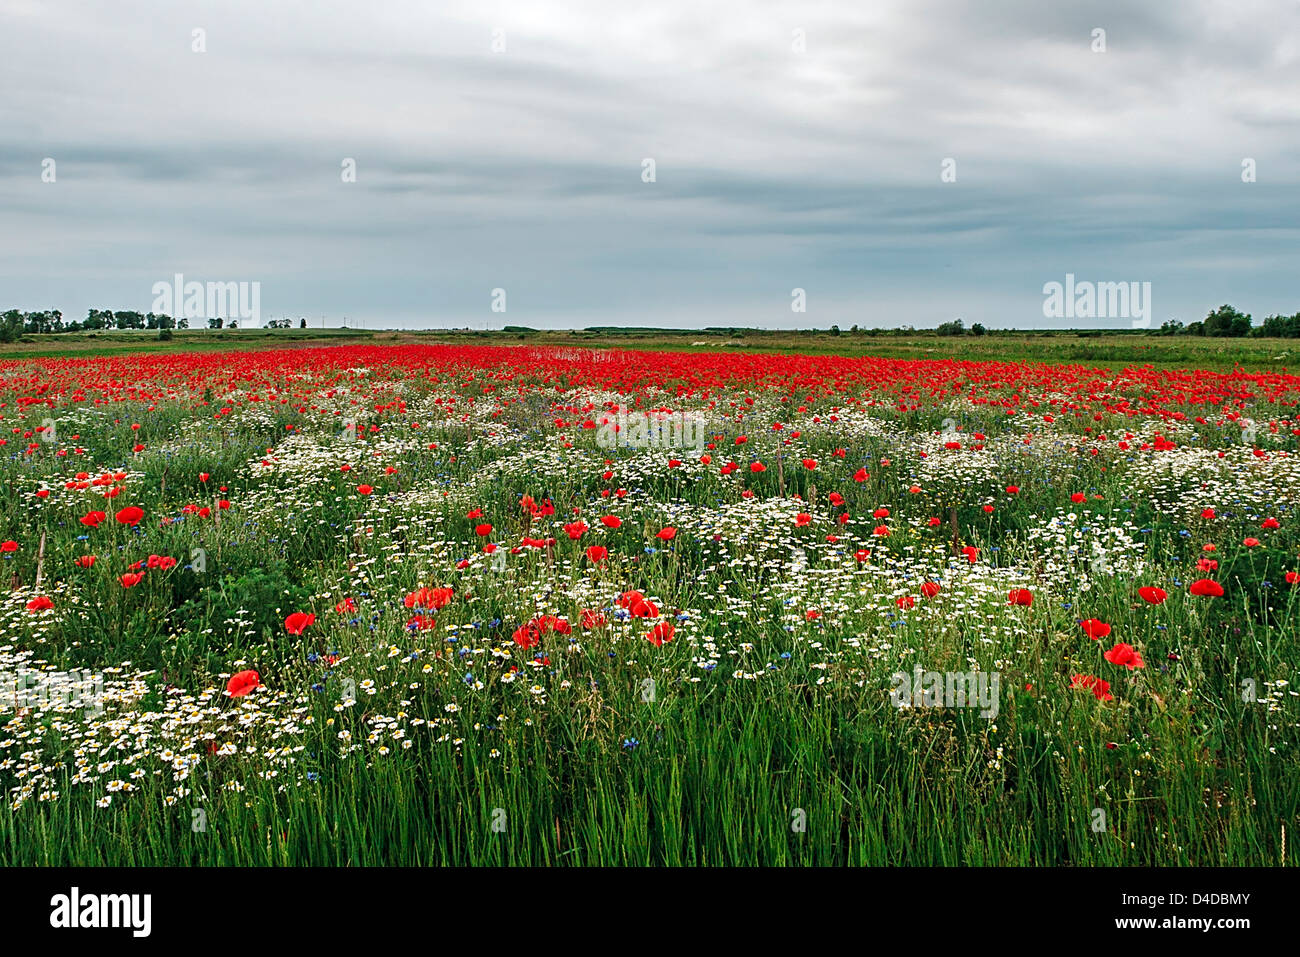 Campo con fiori di camomilla e semi di papavero, con uno sfondo di cielo con nuvole. Foto Stock